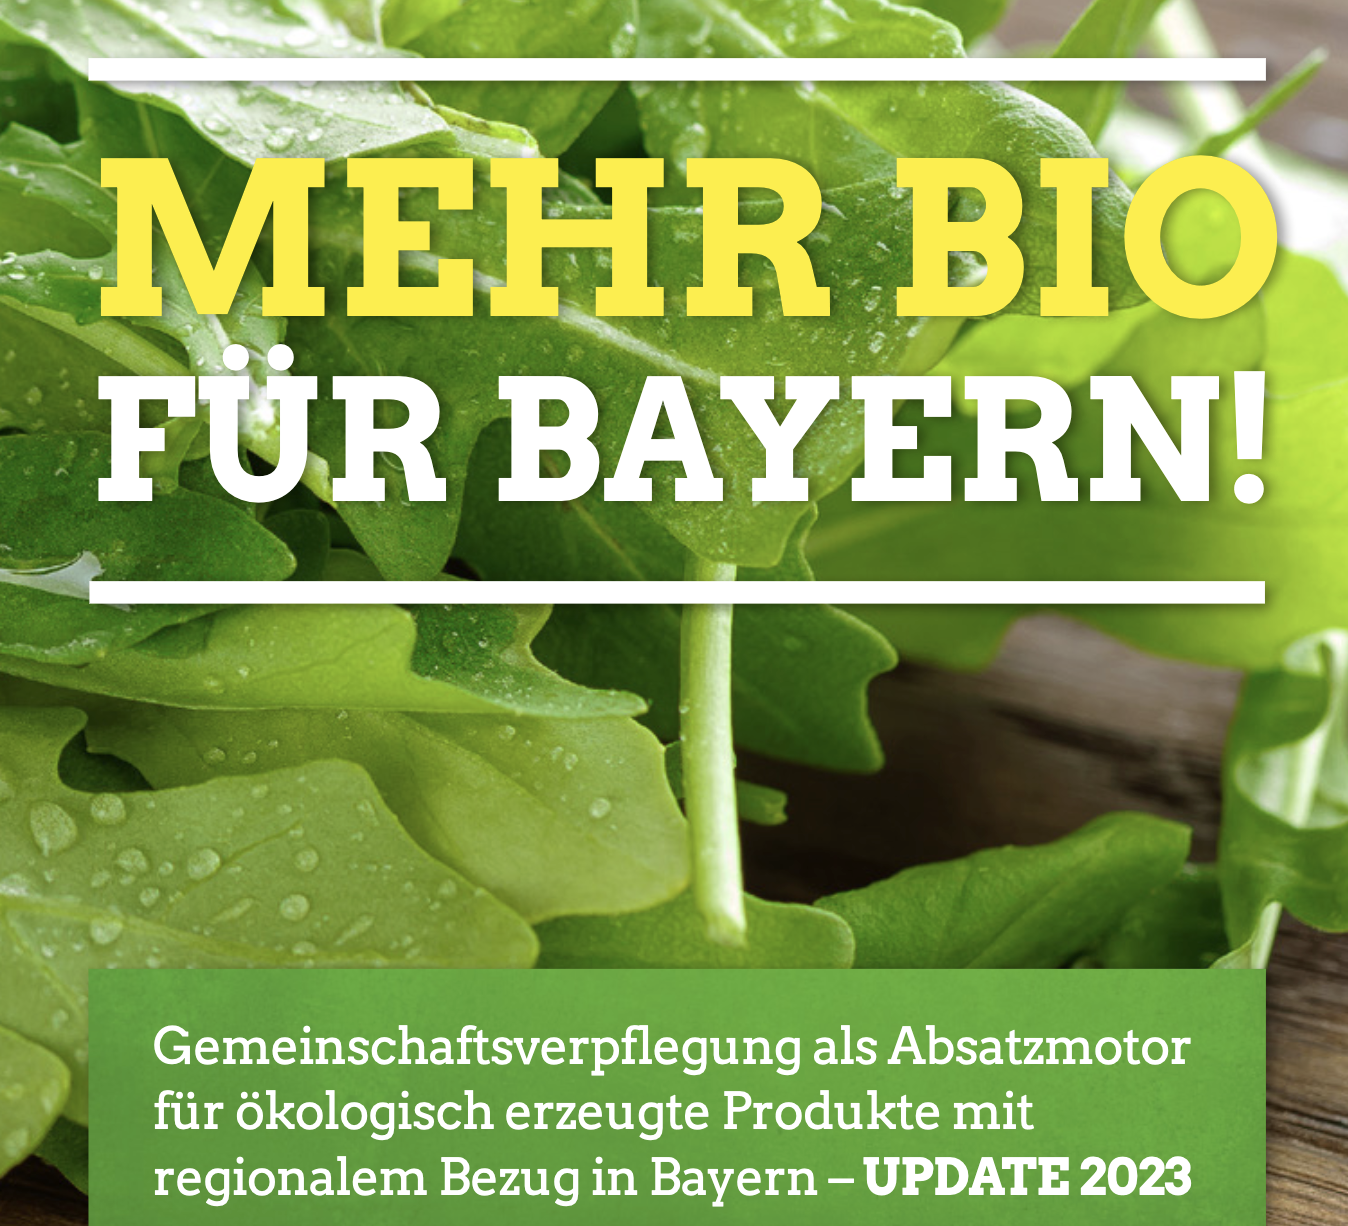 Mehr Bio für Bayern: Gemeinschaftsverpflegung als Absatzmotor für ökologisch erzeugte Produkte mit regionalem Bezug in Bayern